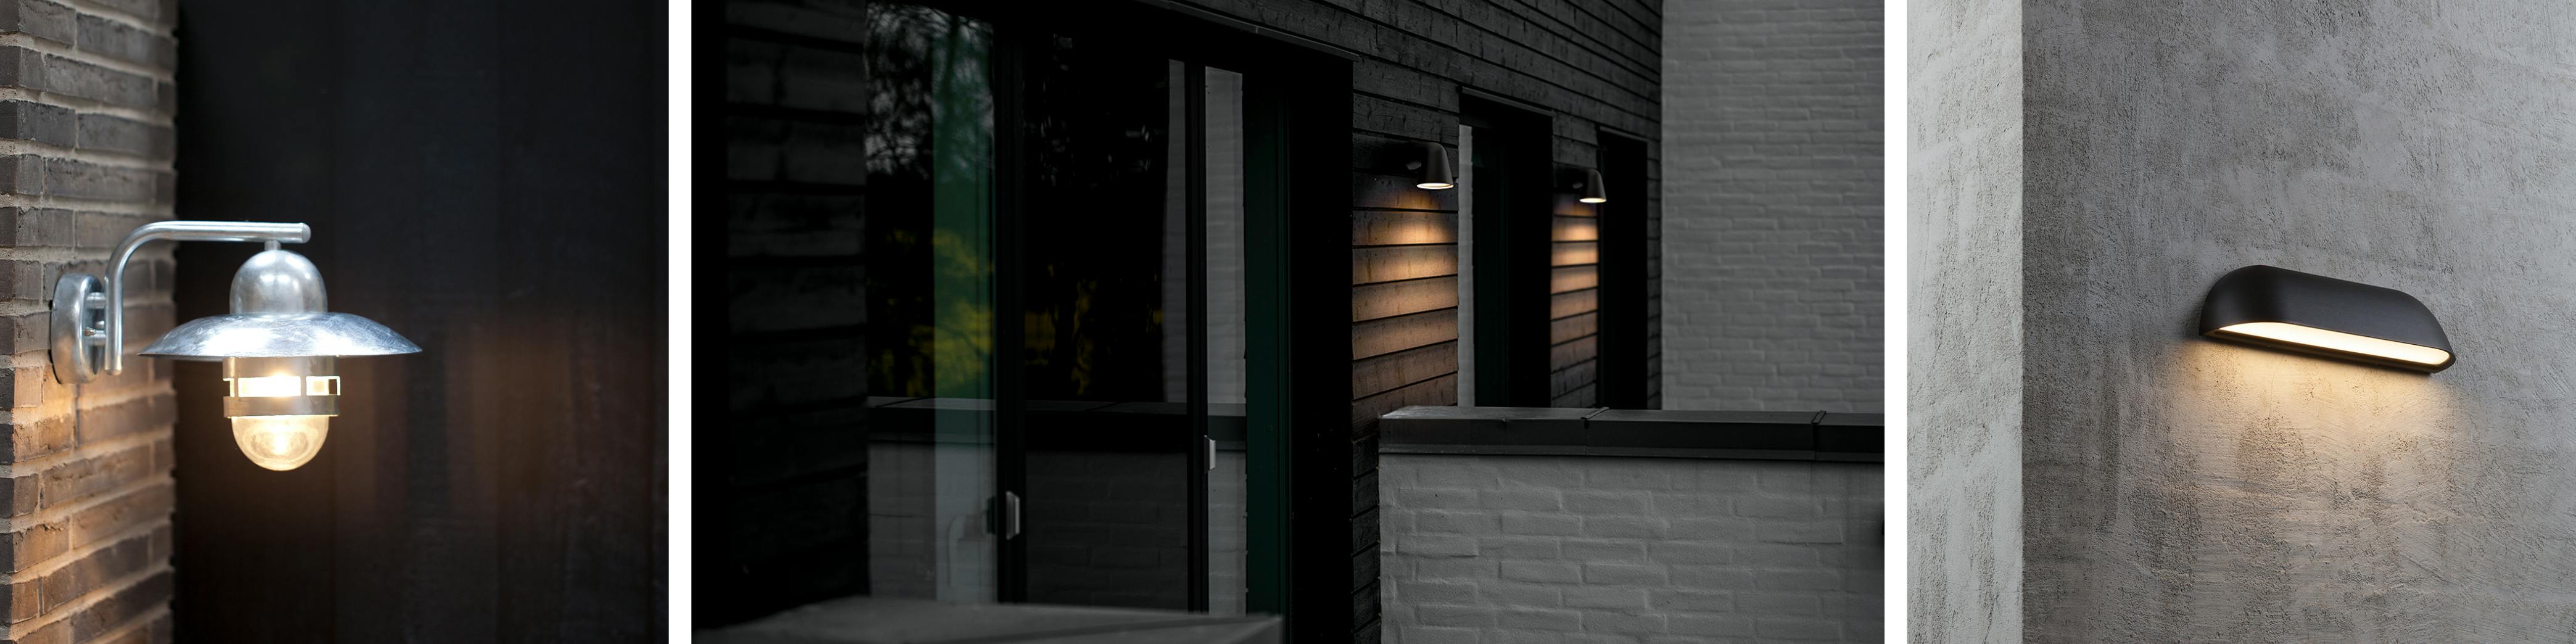 Außenleuchten - Lampen für den Außenbereich